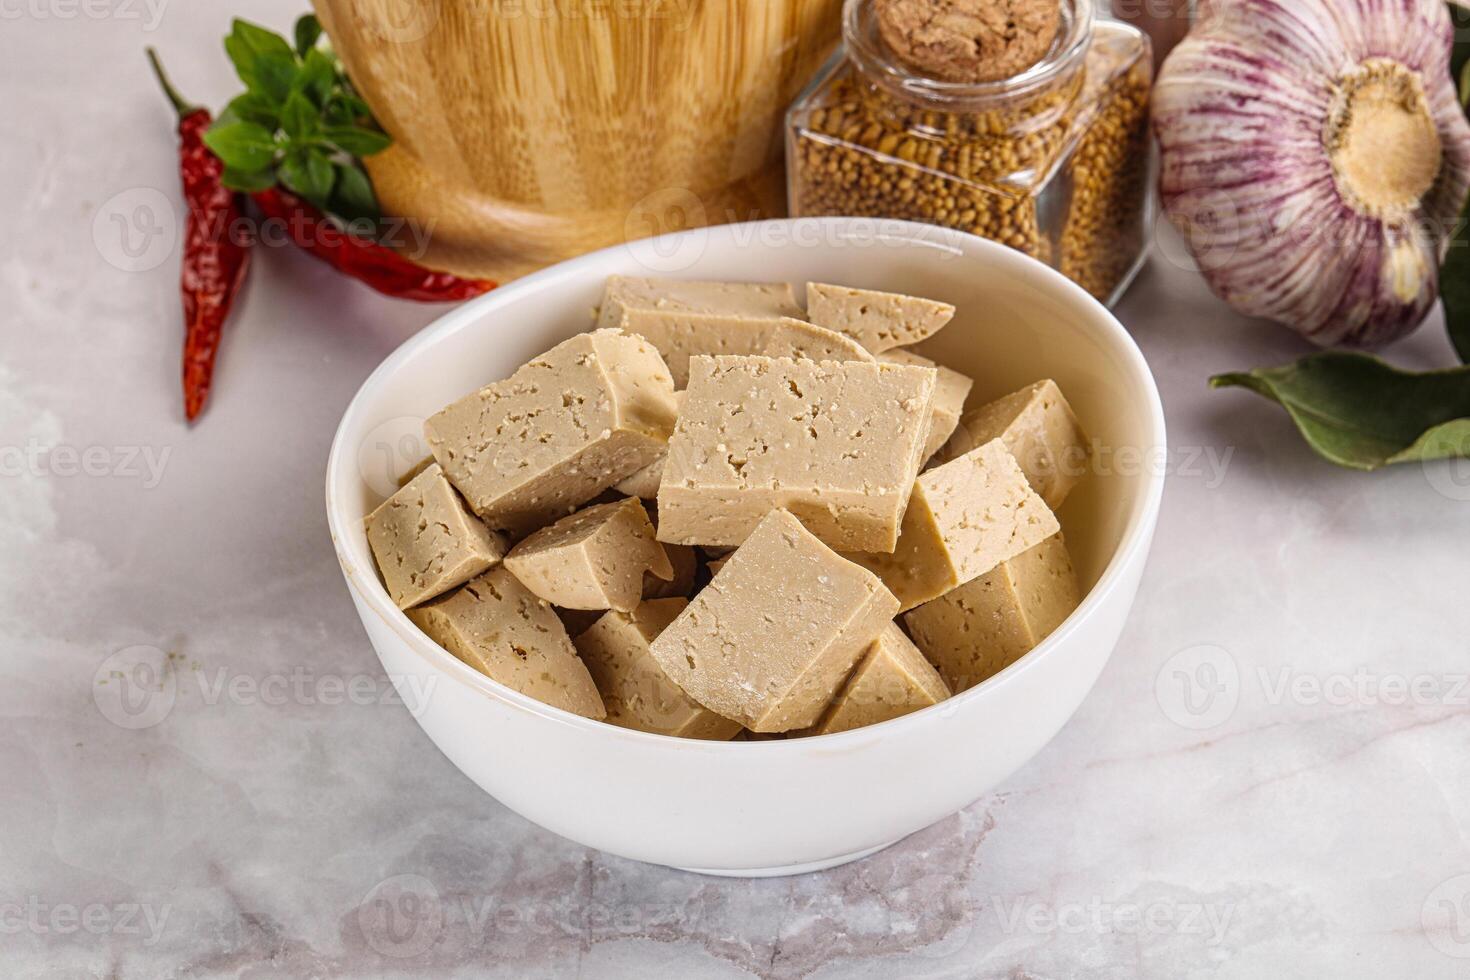 veganistisch keuken - biologisch tofu kaas foto